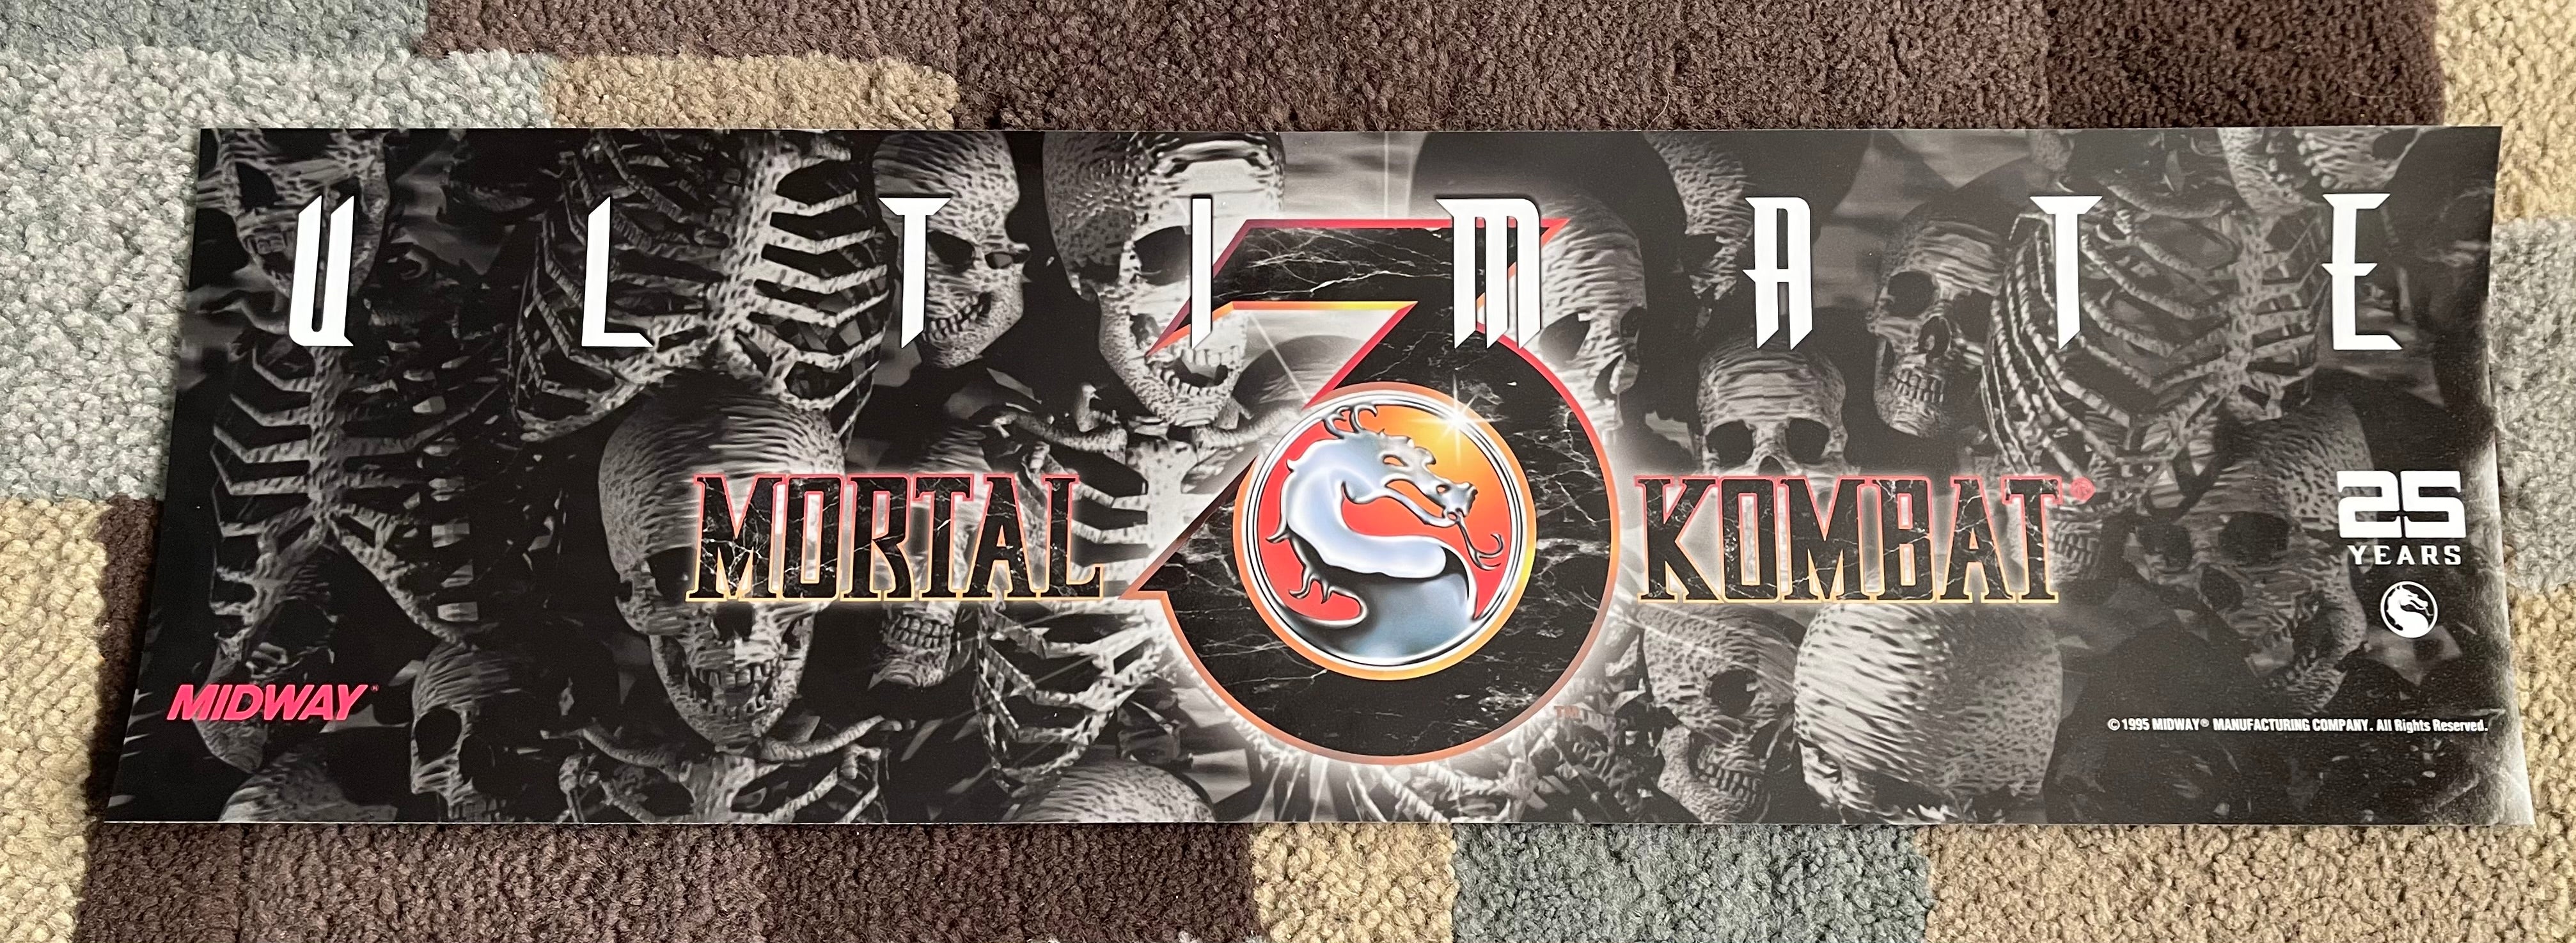 Kit artistique complet du 25e anniversaire de Mortal Kombat 3